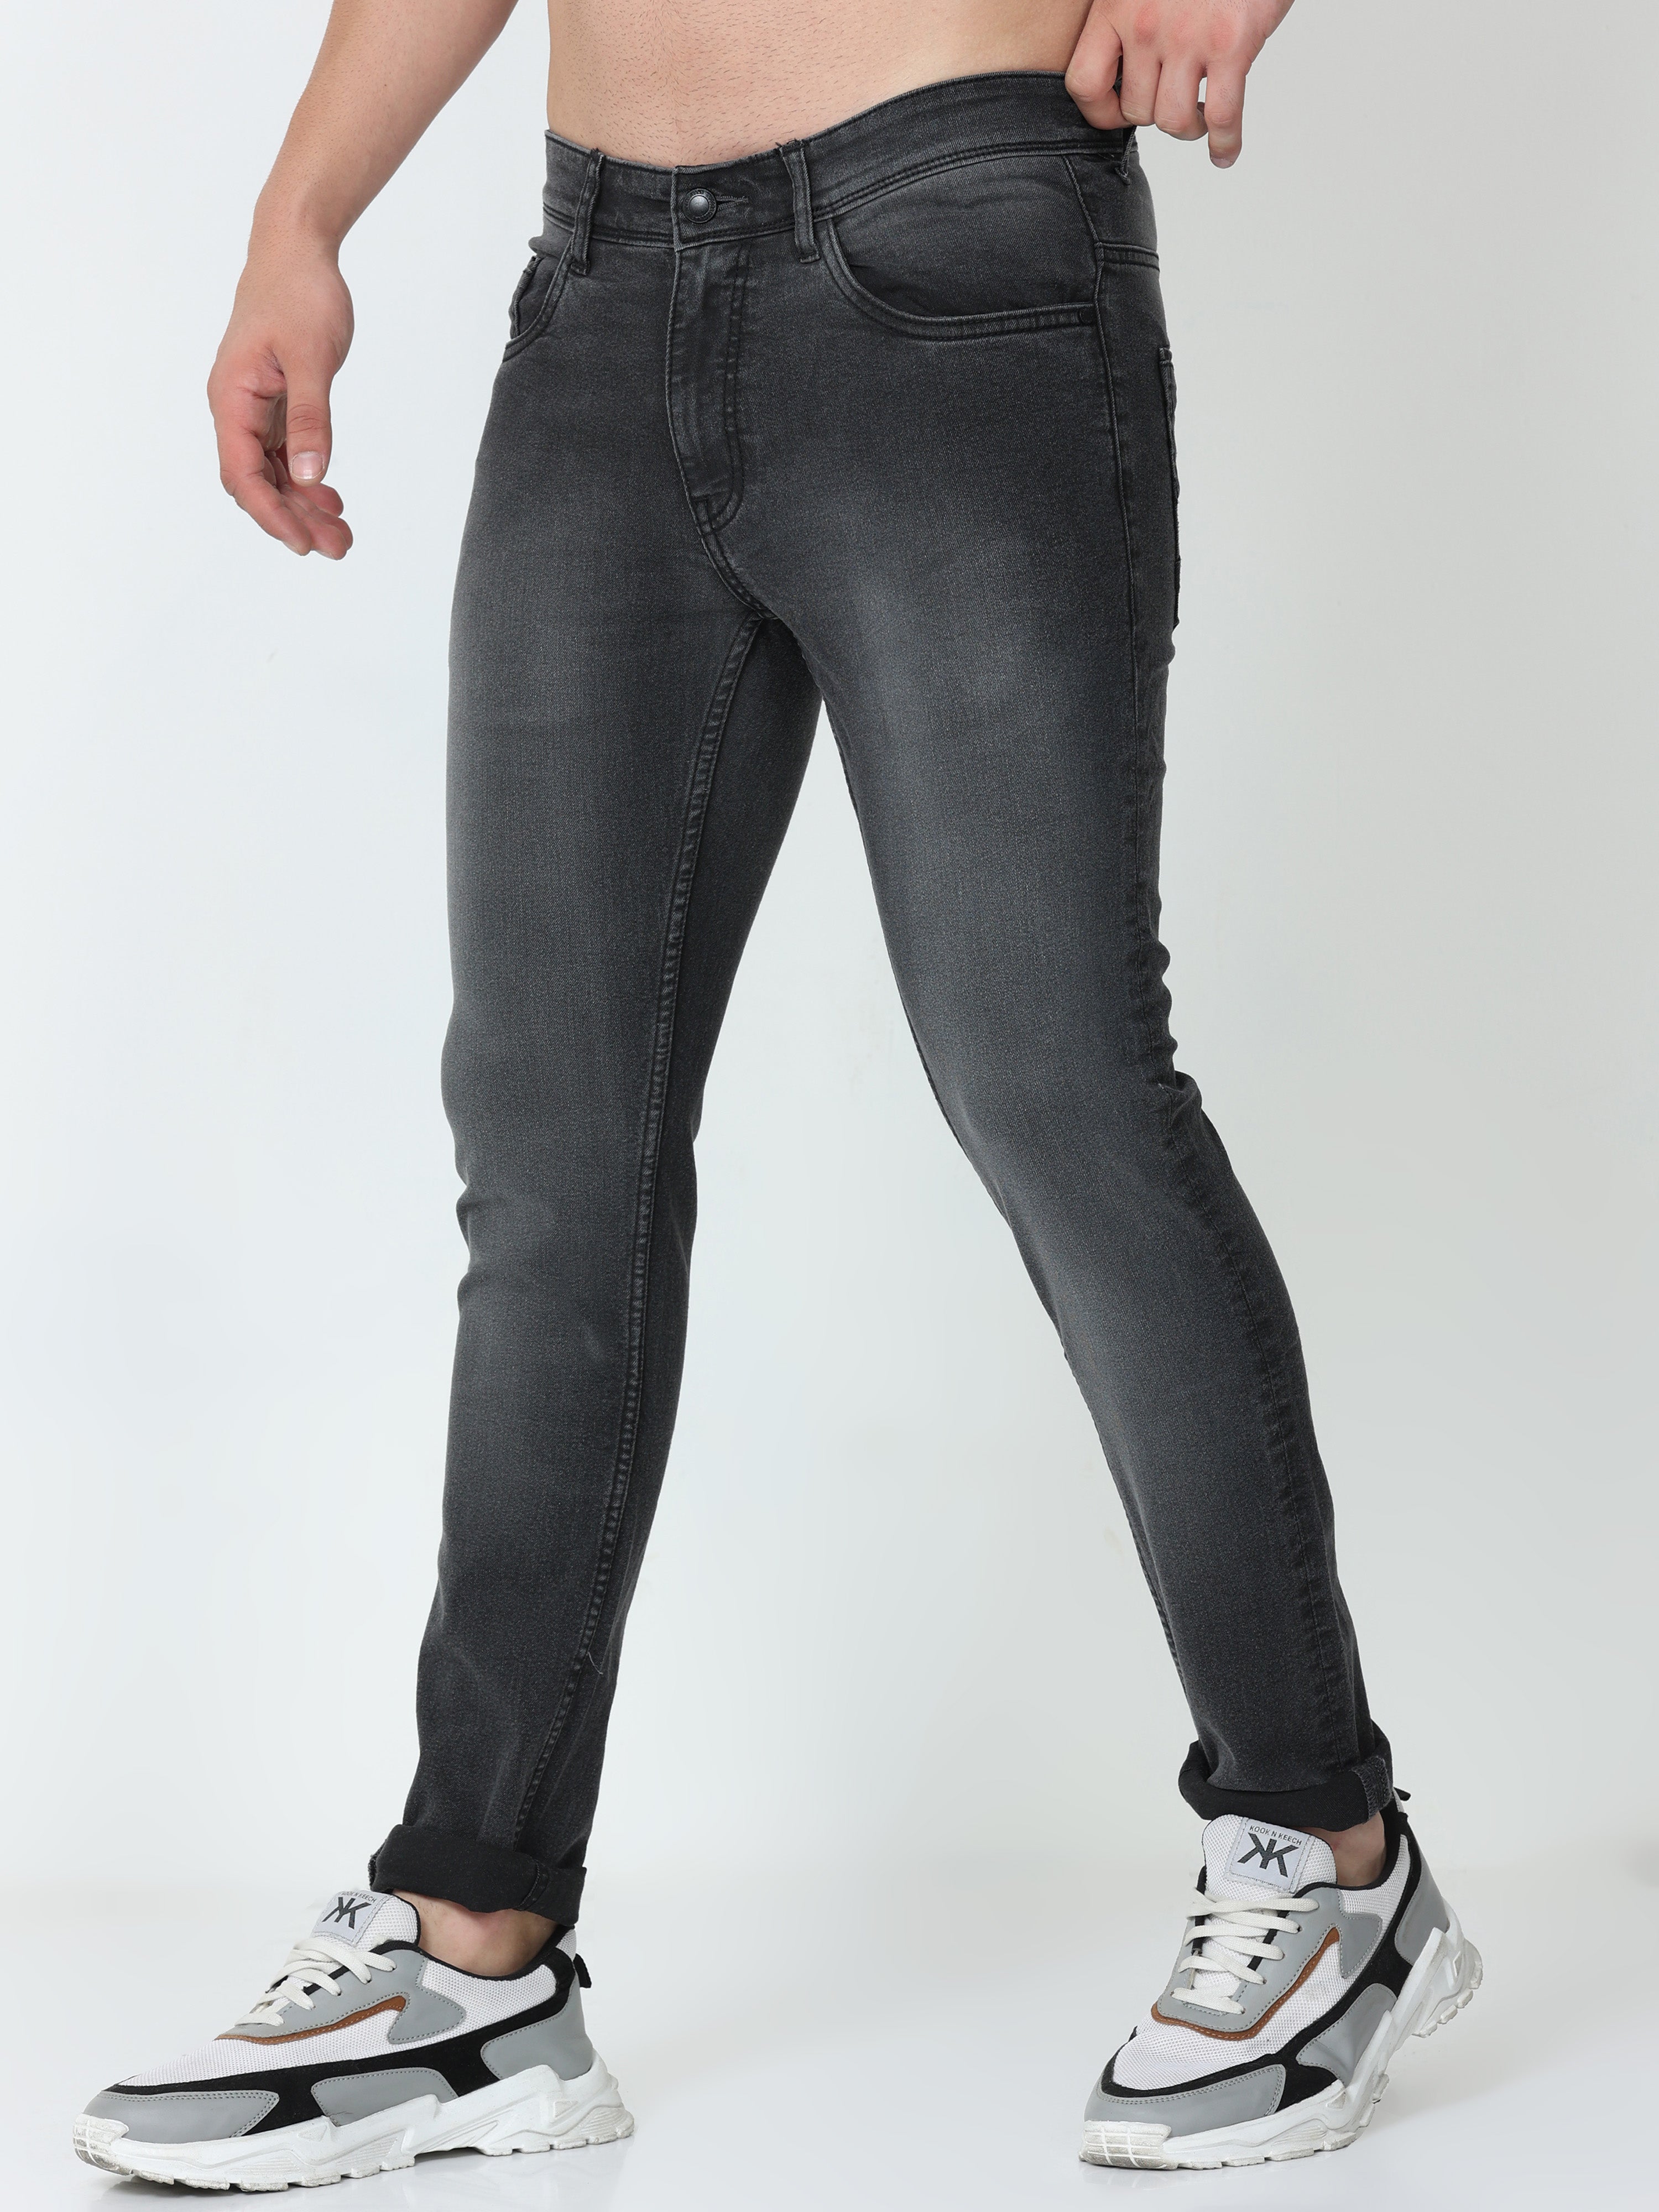 Carbon Grey Men Skinny Fit Jeans